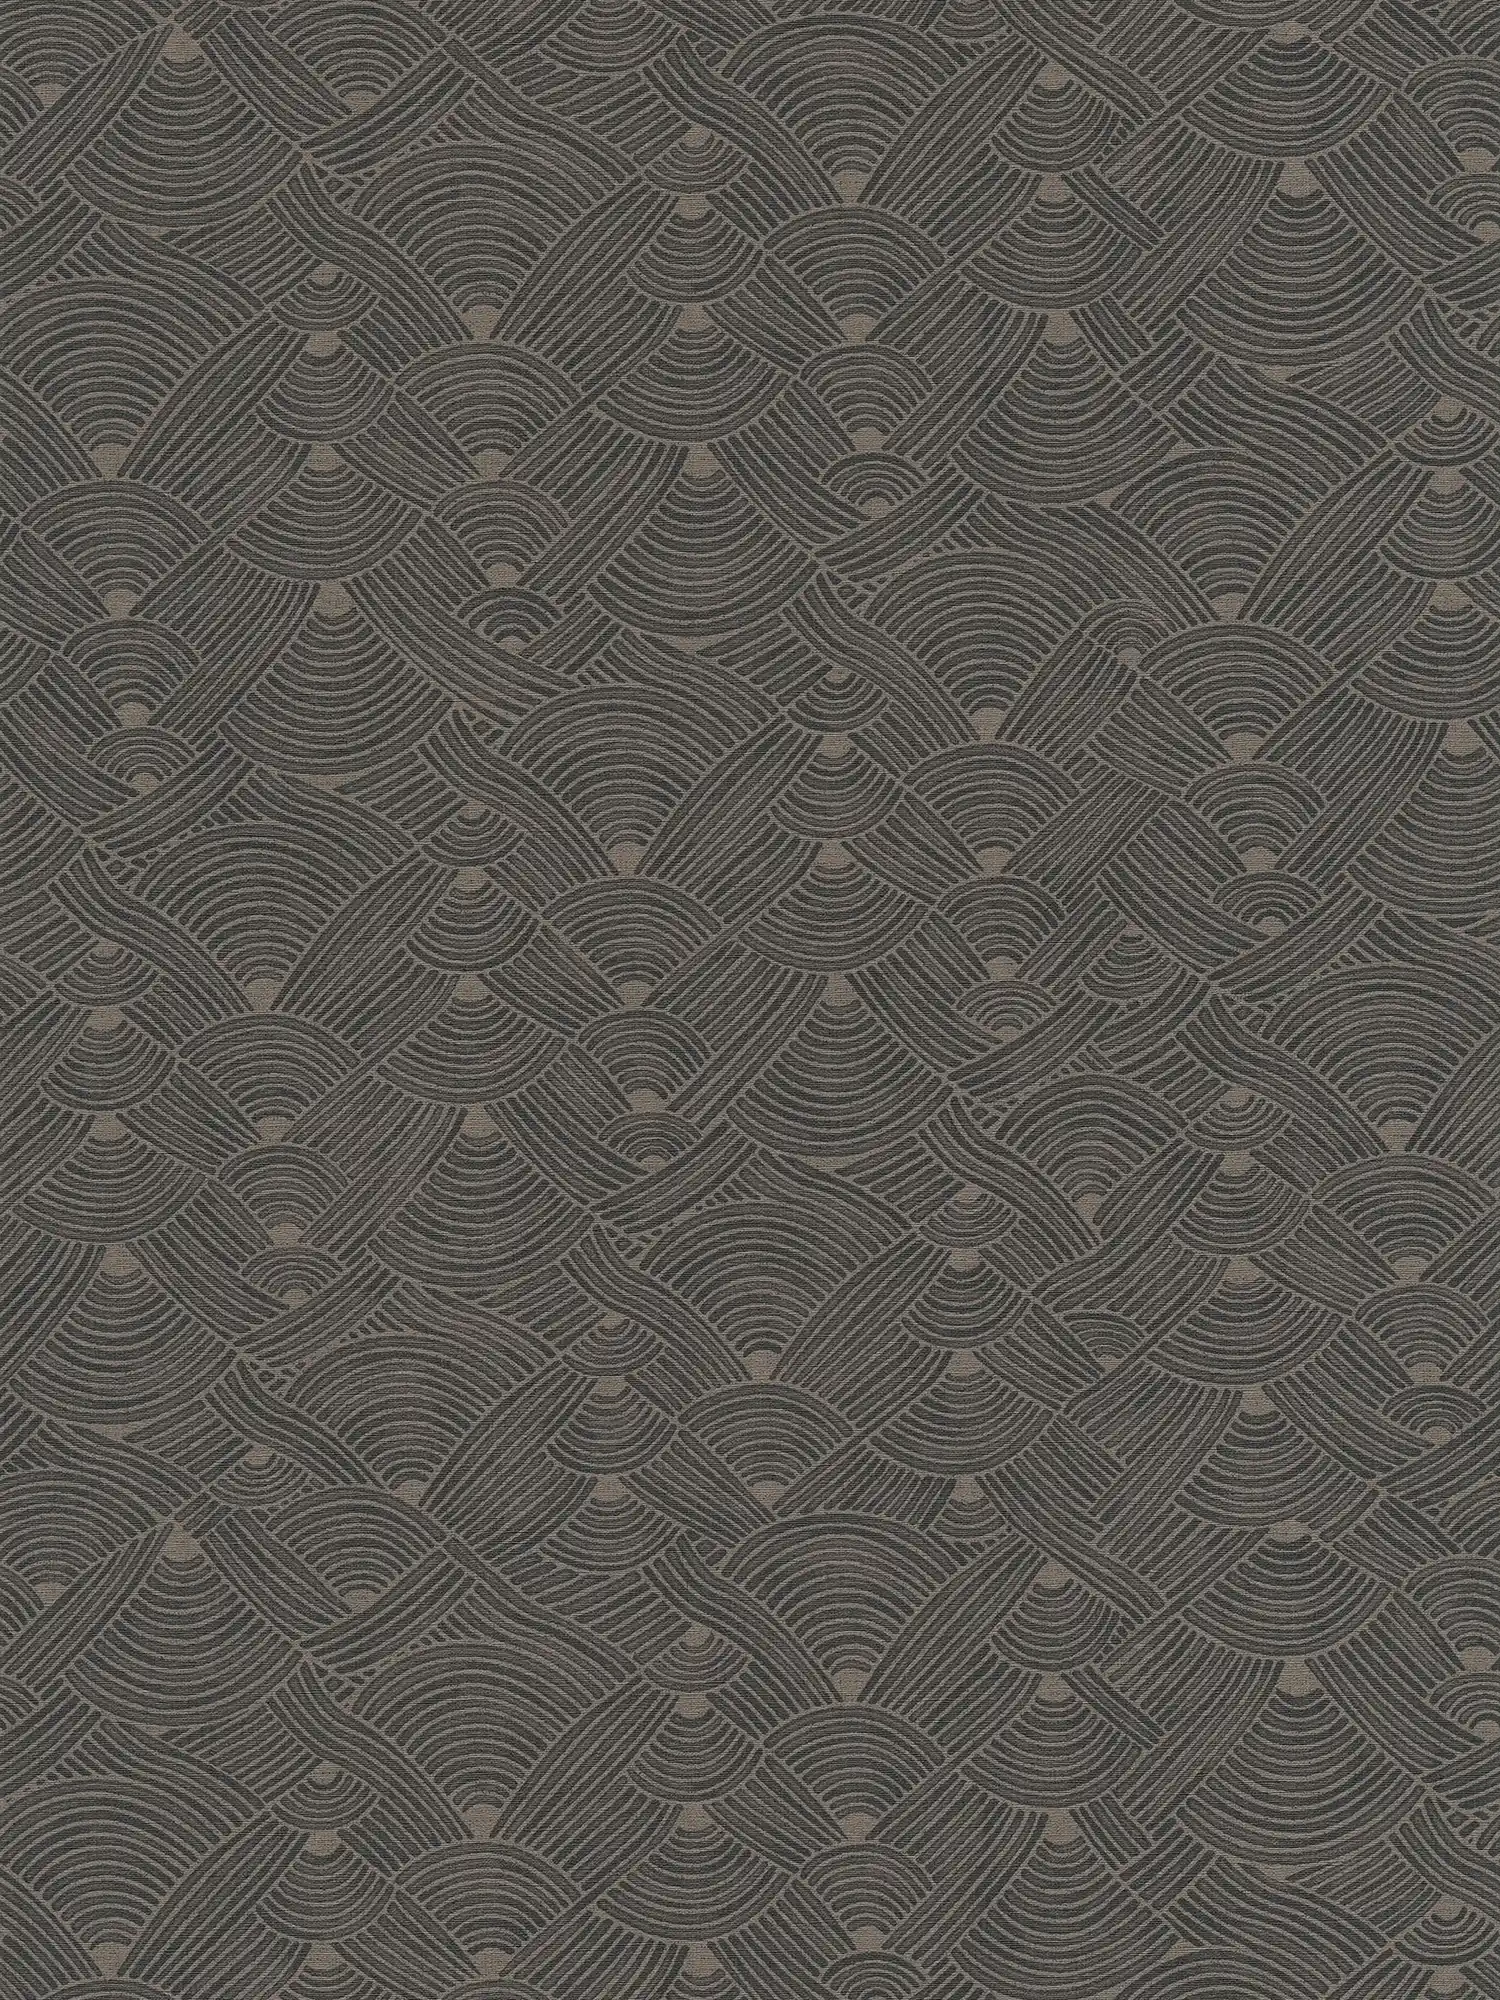 Dark wallpaper braided motif with texture design - grey, black
